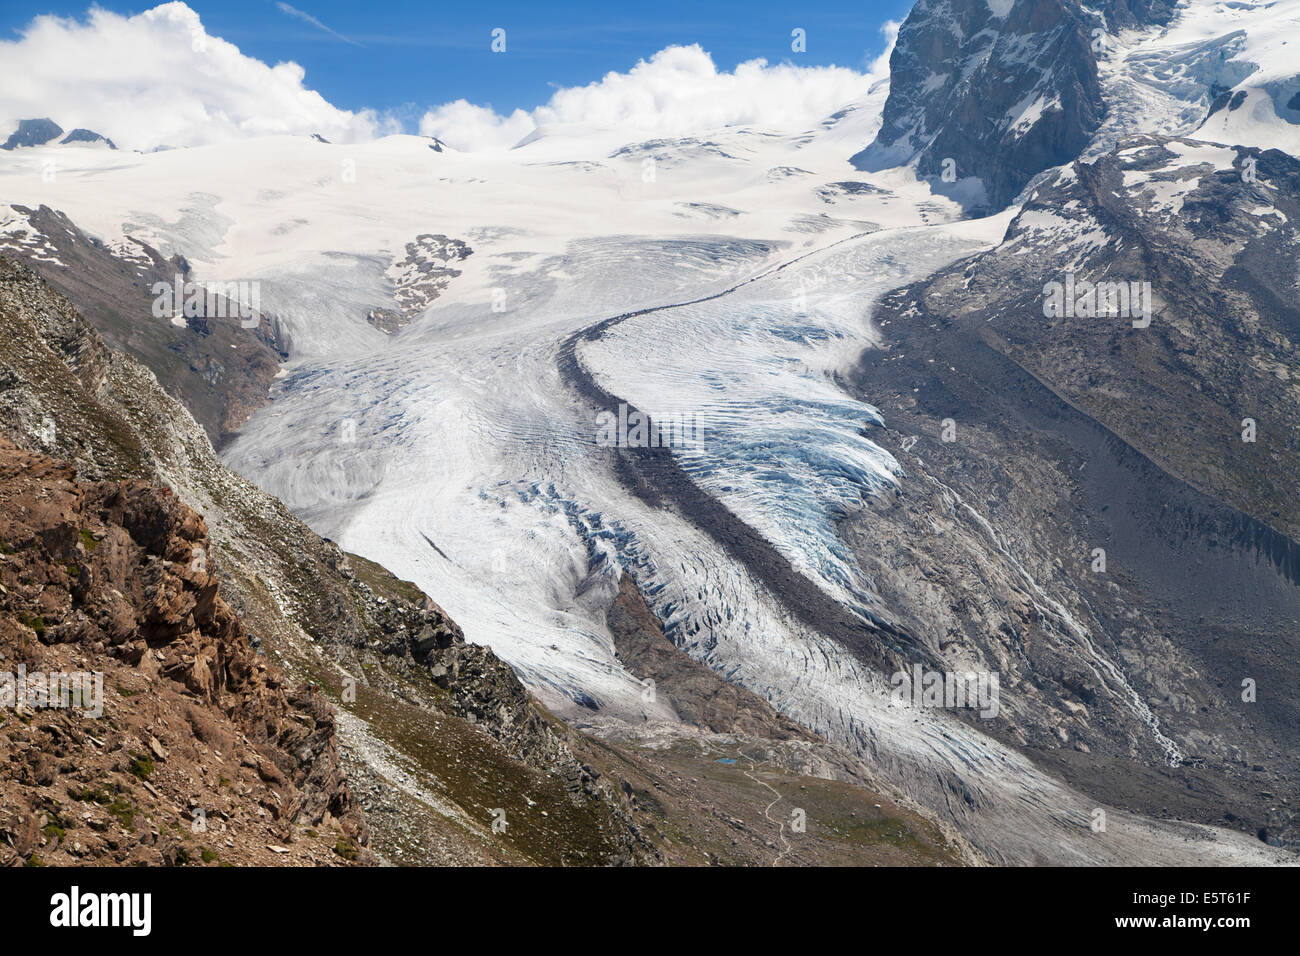 Monte Rosa Glacier in the Swiss Alps. Stock Photo